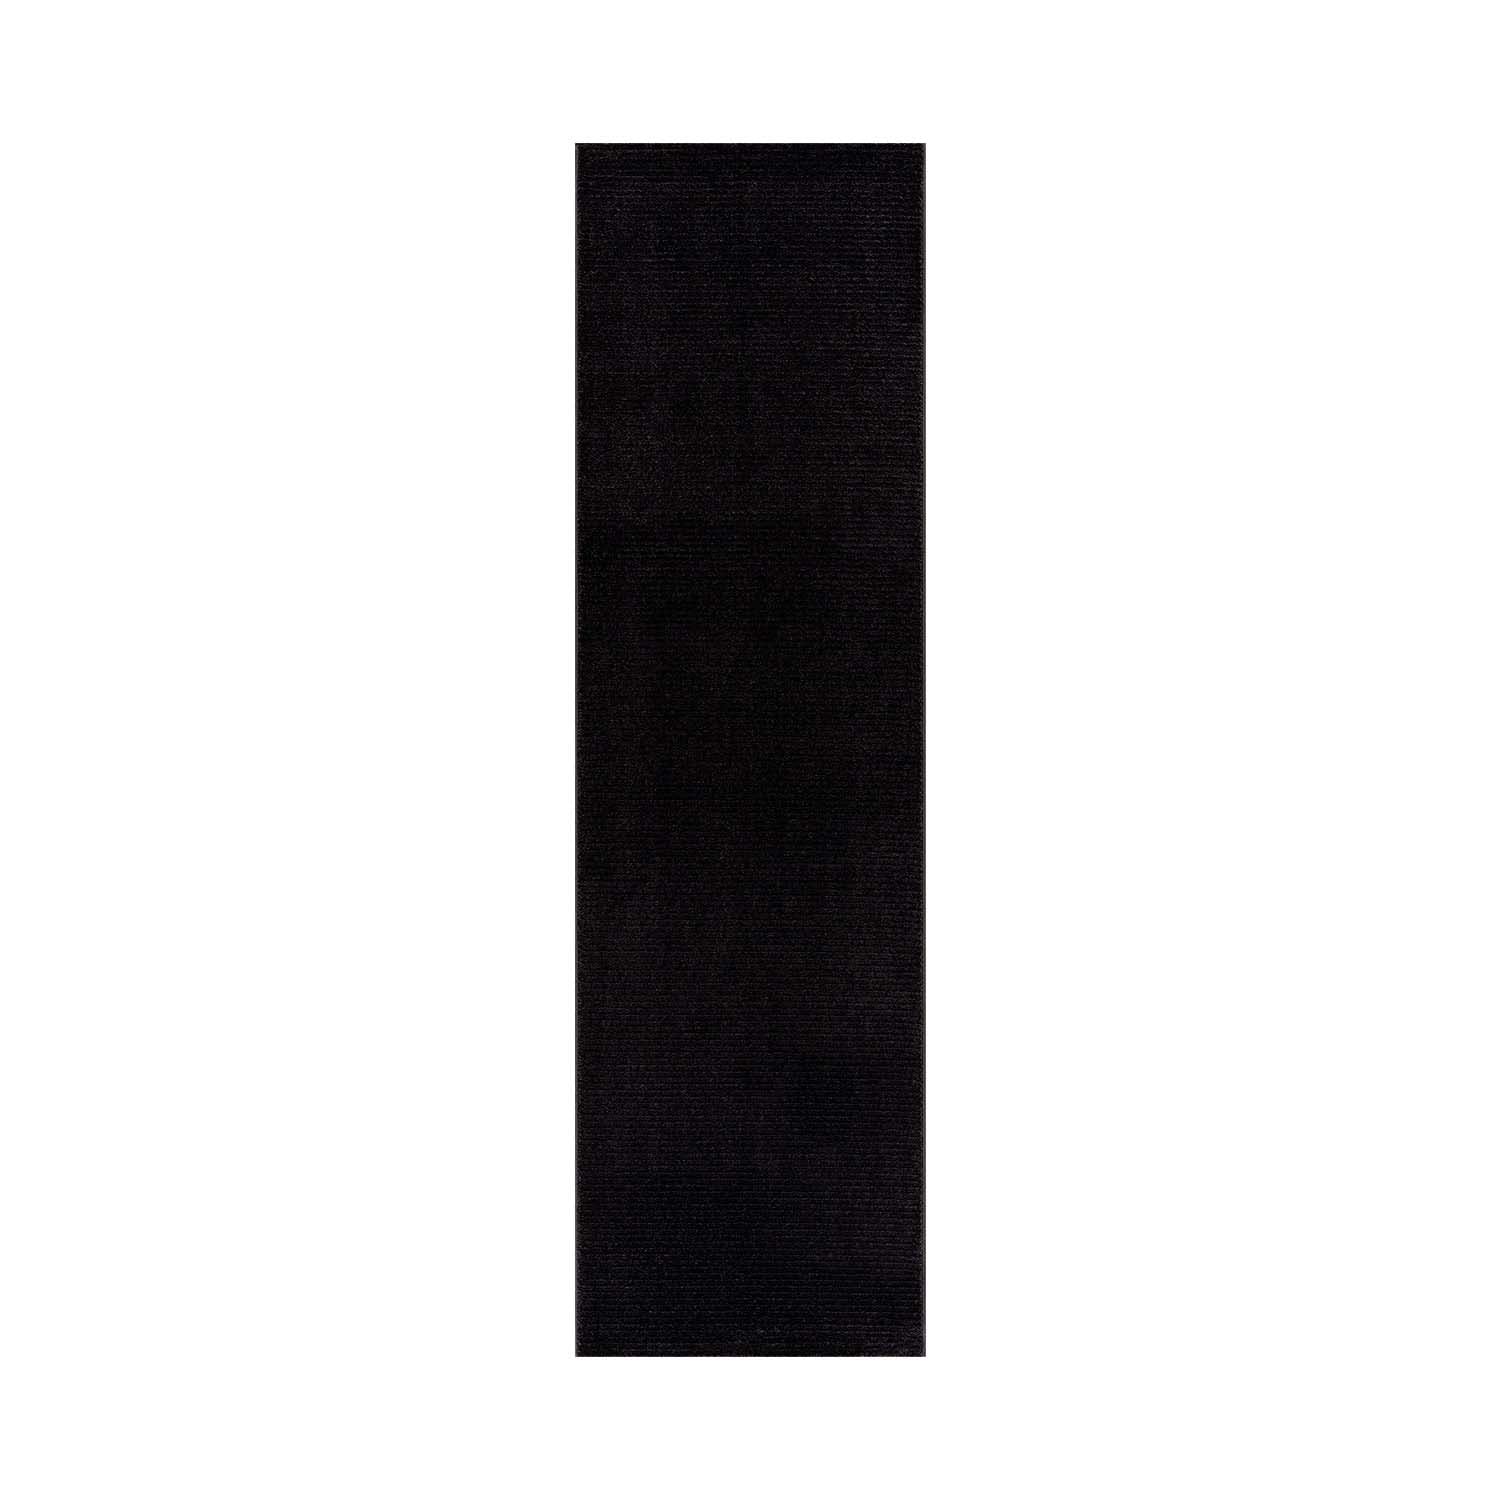 Tapis uni noir à relief linéaire 120x160cm TARA